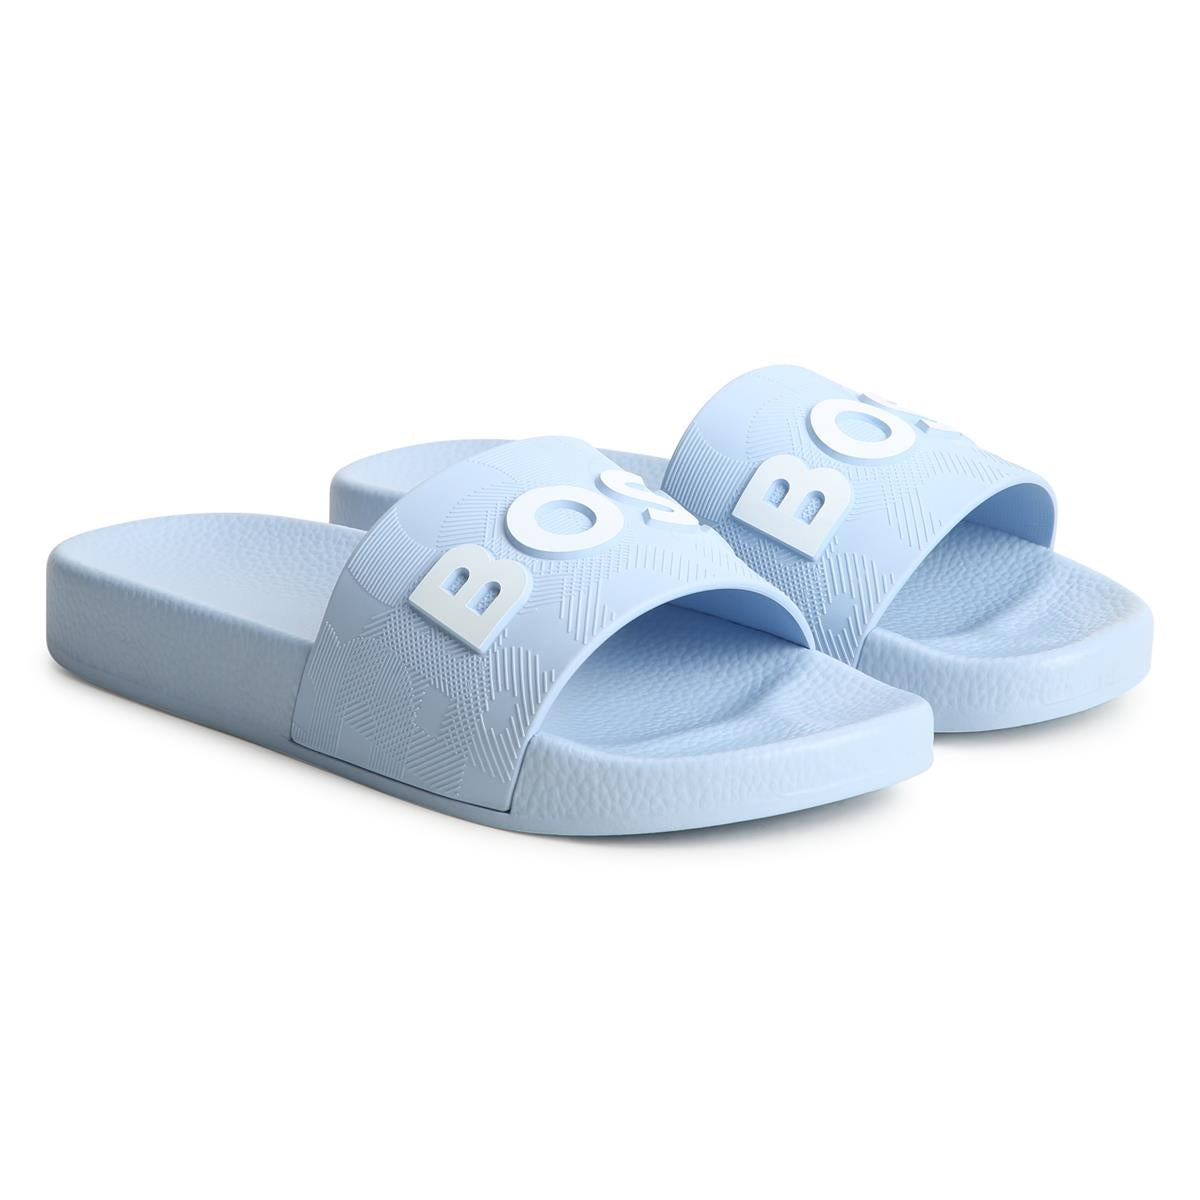 Boys Light Blue Slippers